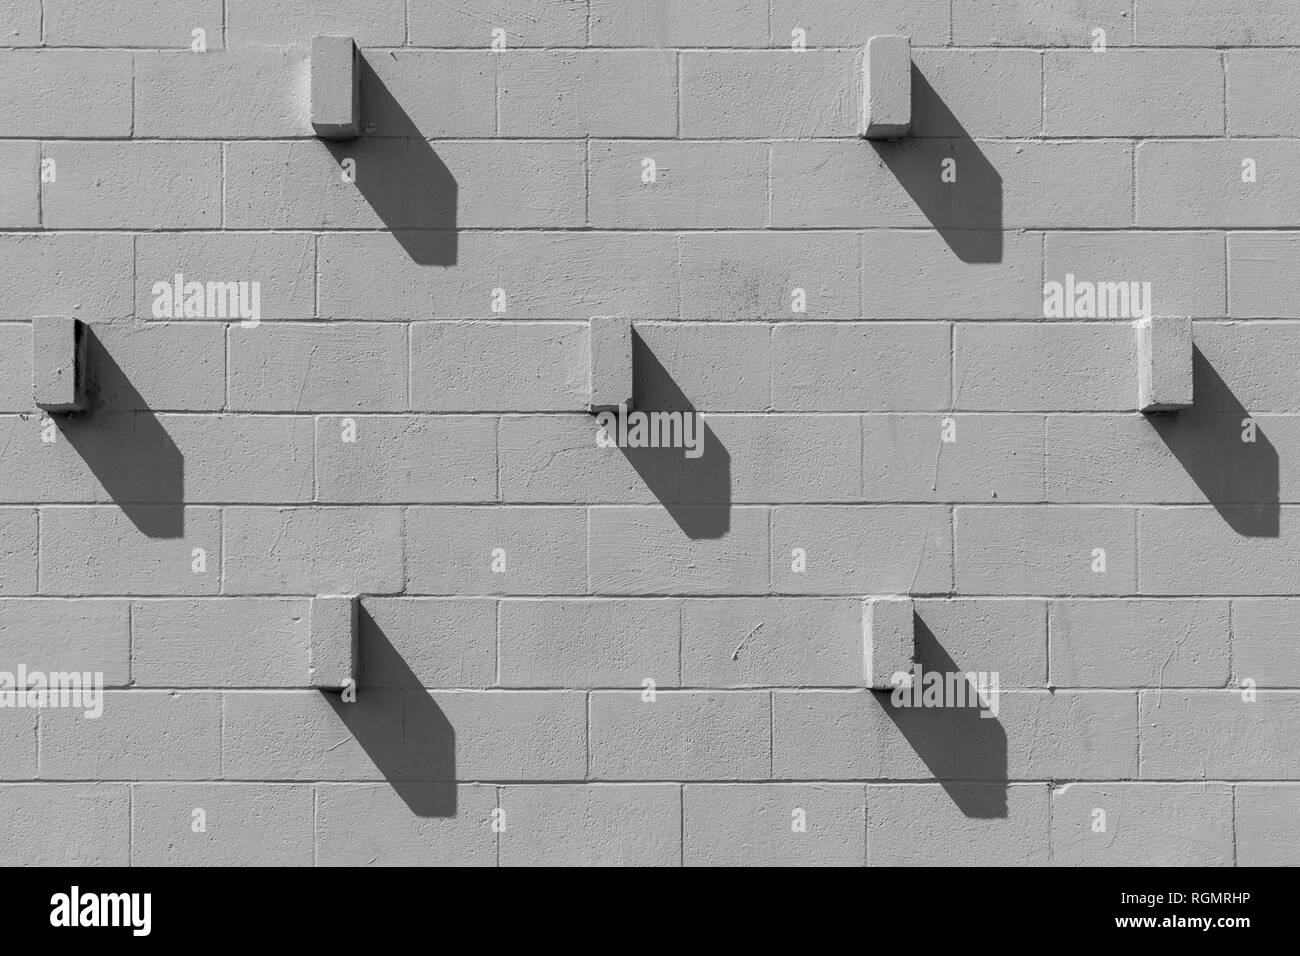 Ziegel, ein schlackenkegel Block herausragt, sind Casting diagonal Schatten. Die Szene sieht ähnlich aus wie das Zifferblatt einer Uhr. Stockfoto